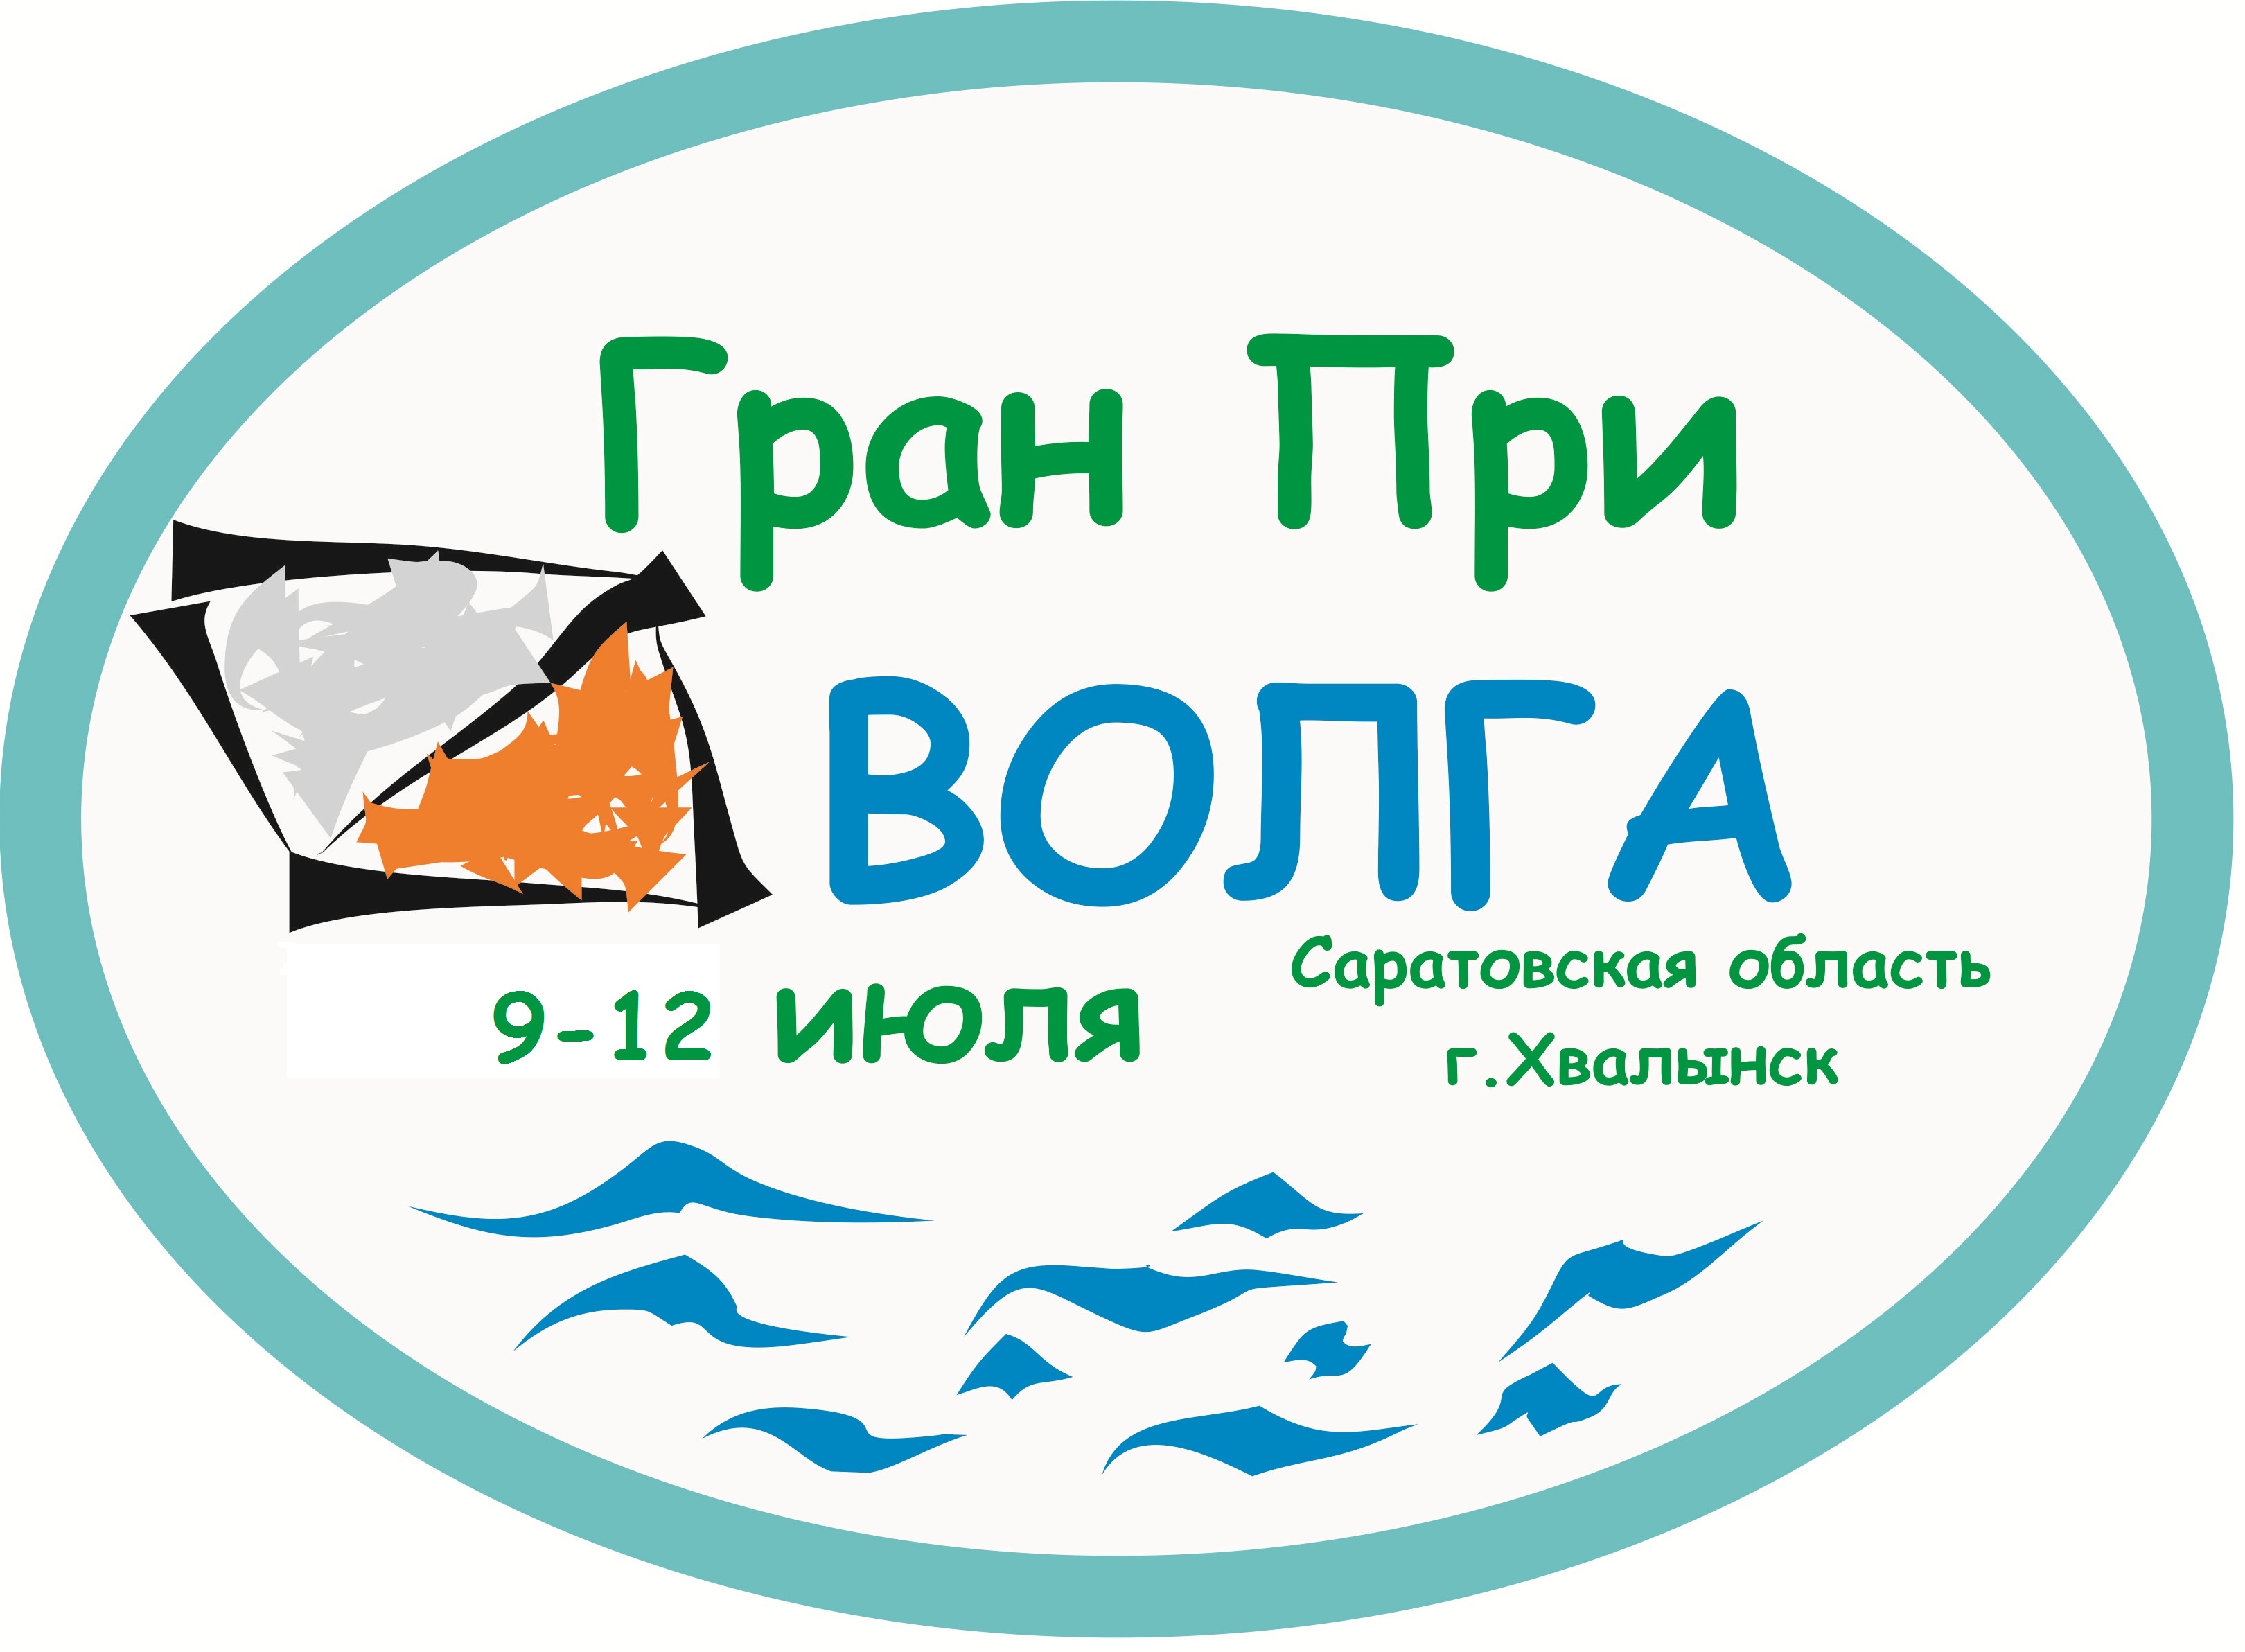 Гран При «Волга» 2015